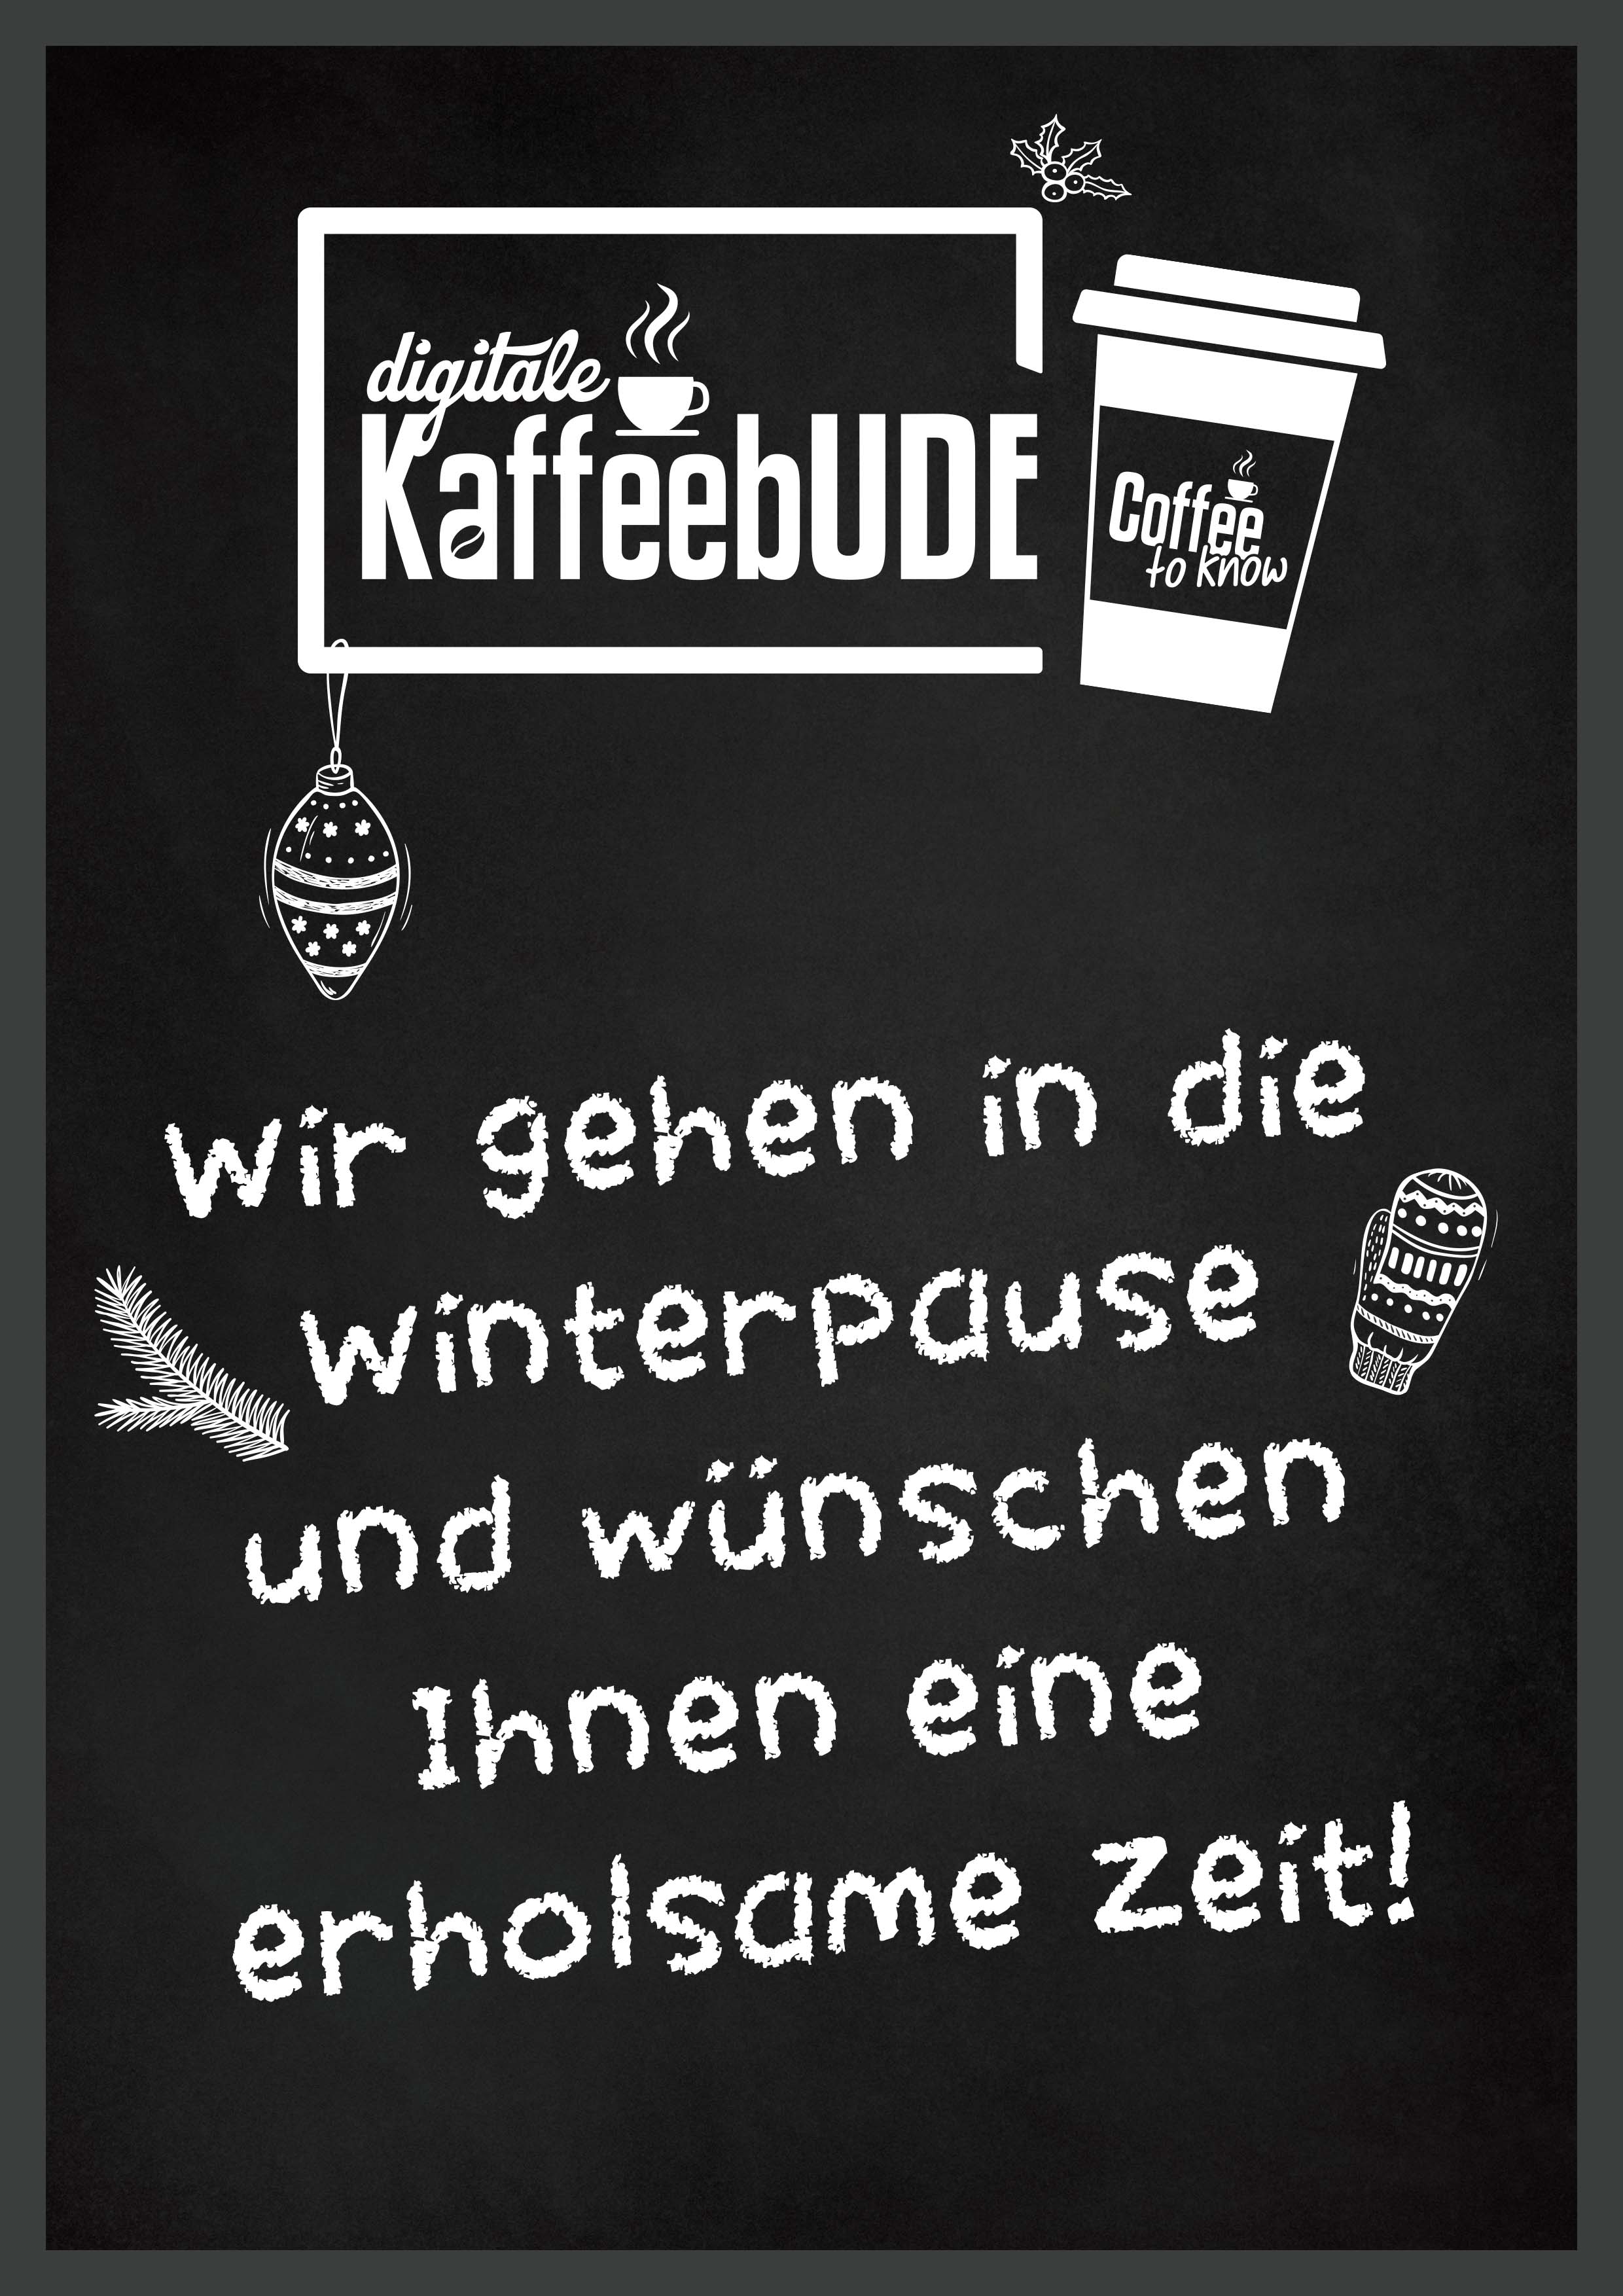 Tafel zur Winterpause_digitale KaffeebUDE